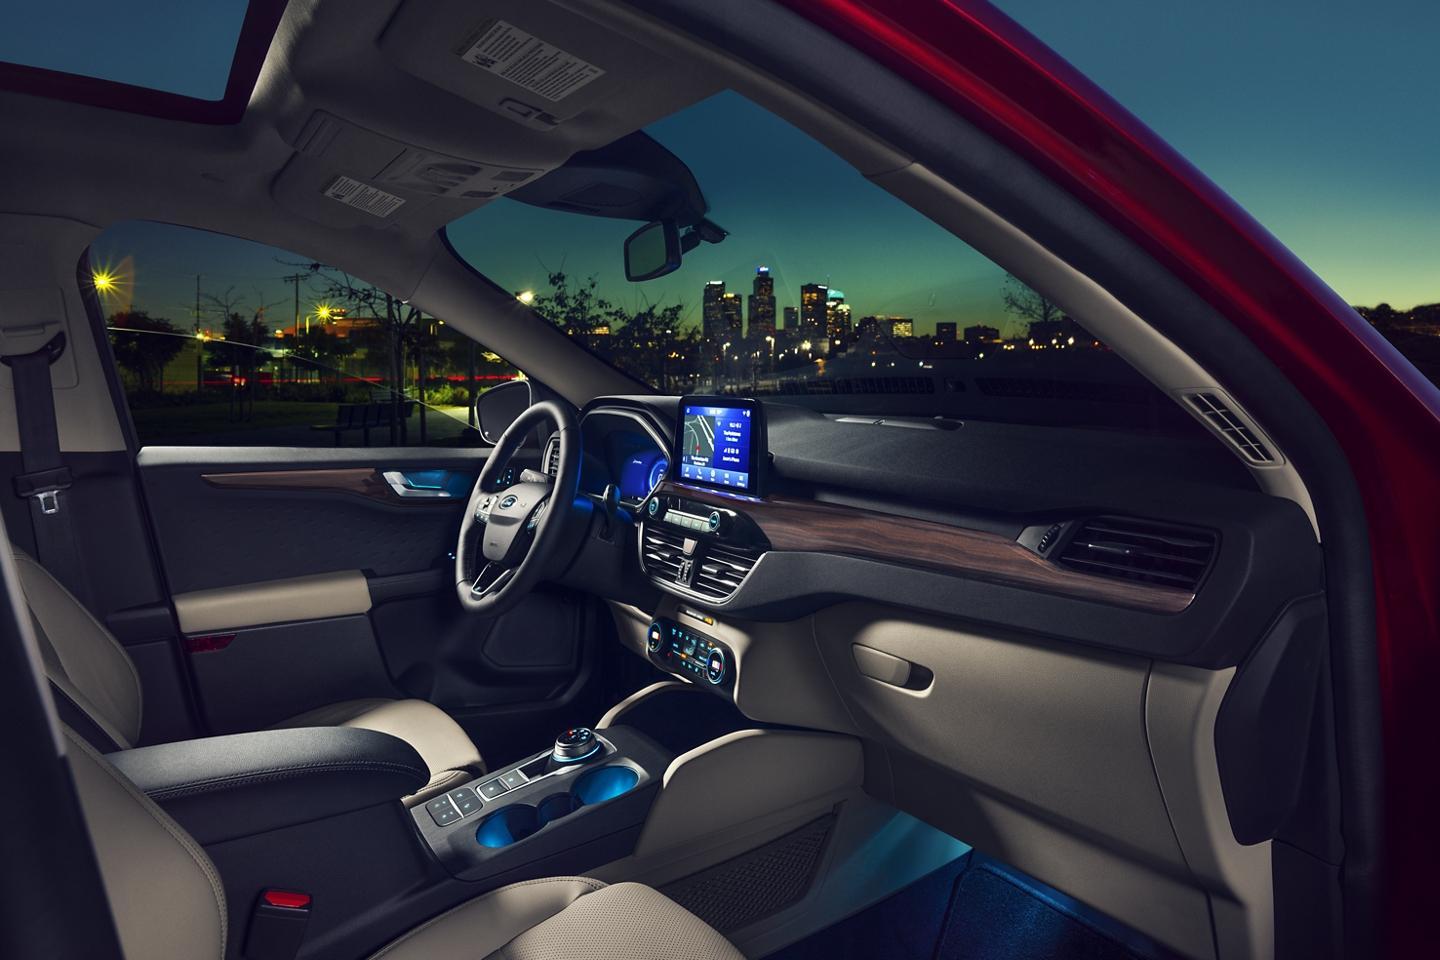  Ford & Lincoln 2020 Escape image